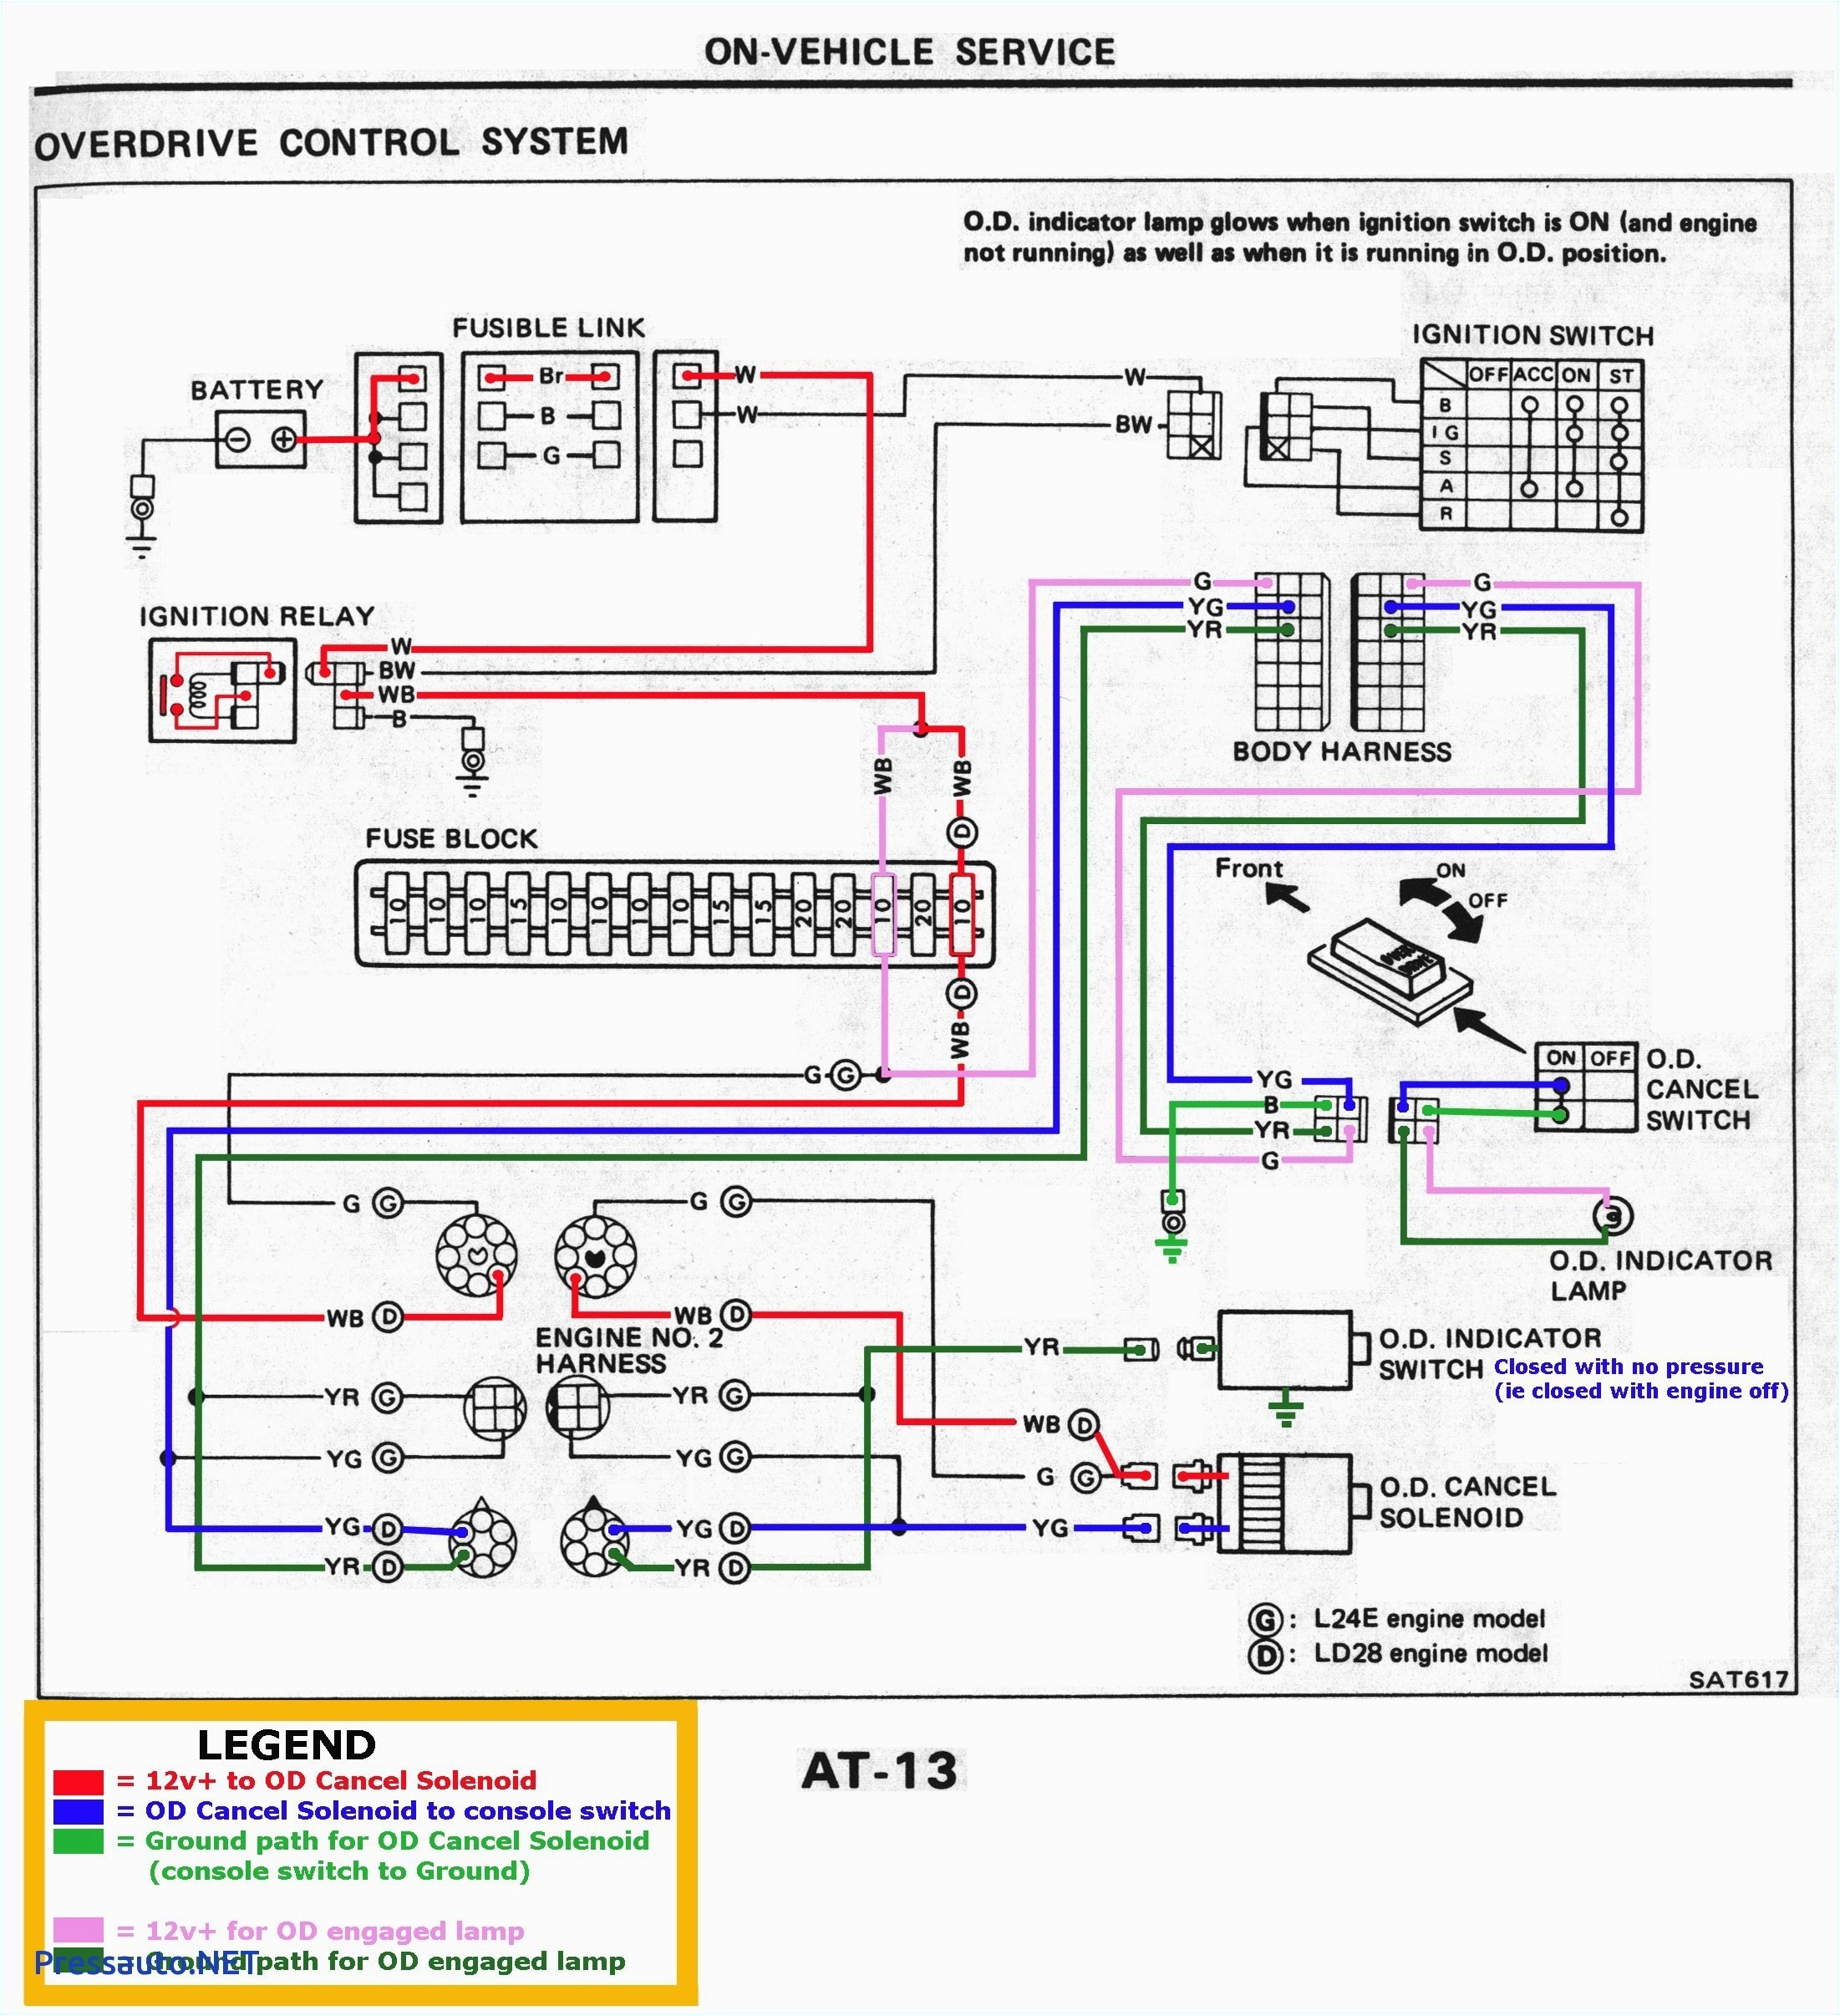 john deere lx178 wiring diagram best of peg perego gator wiring diagram beautiful john deere gator starter of john deere lx178 wiring diagram jpg